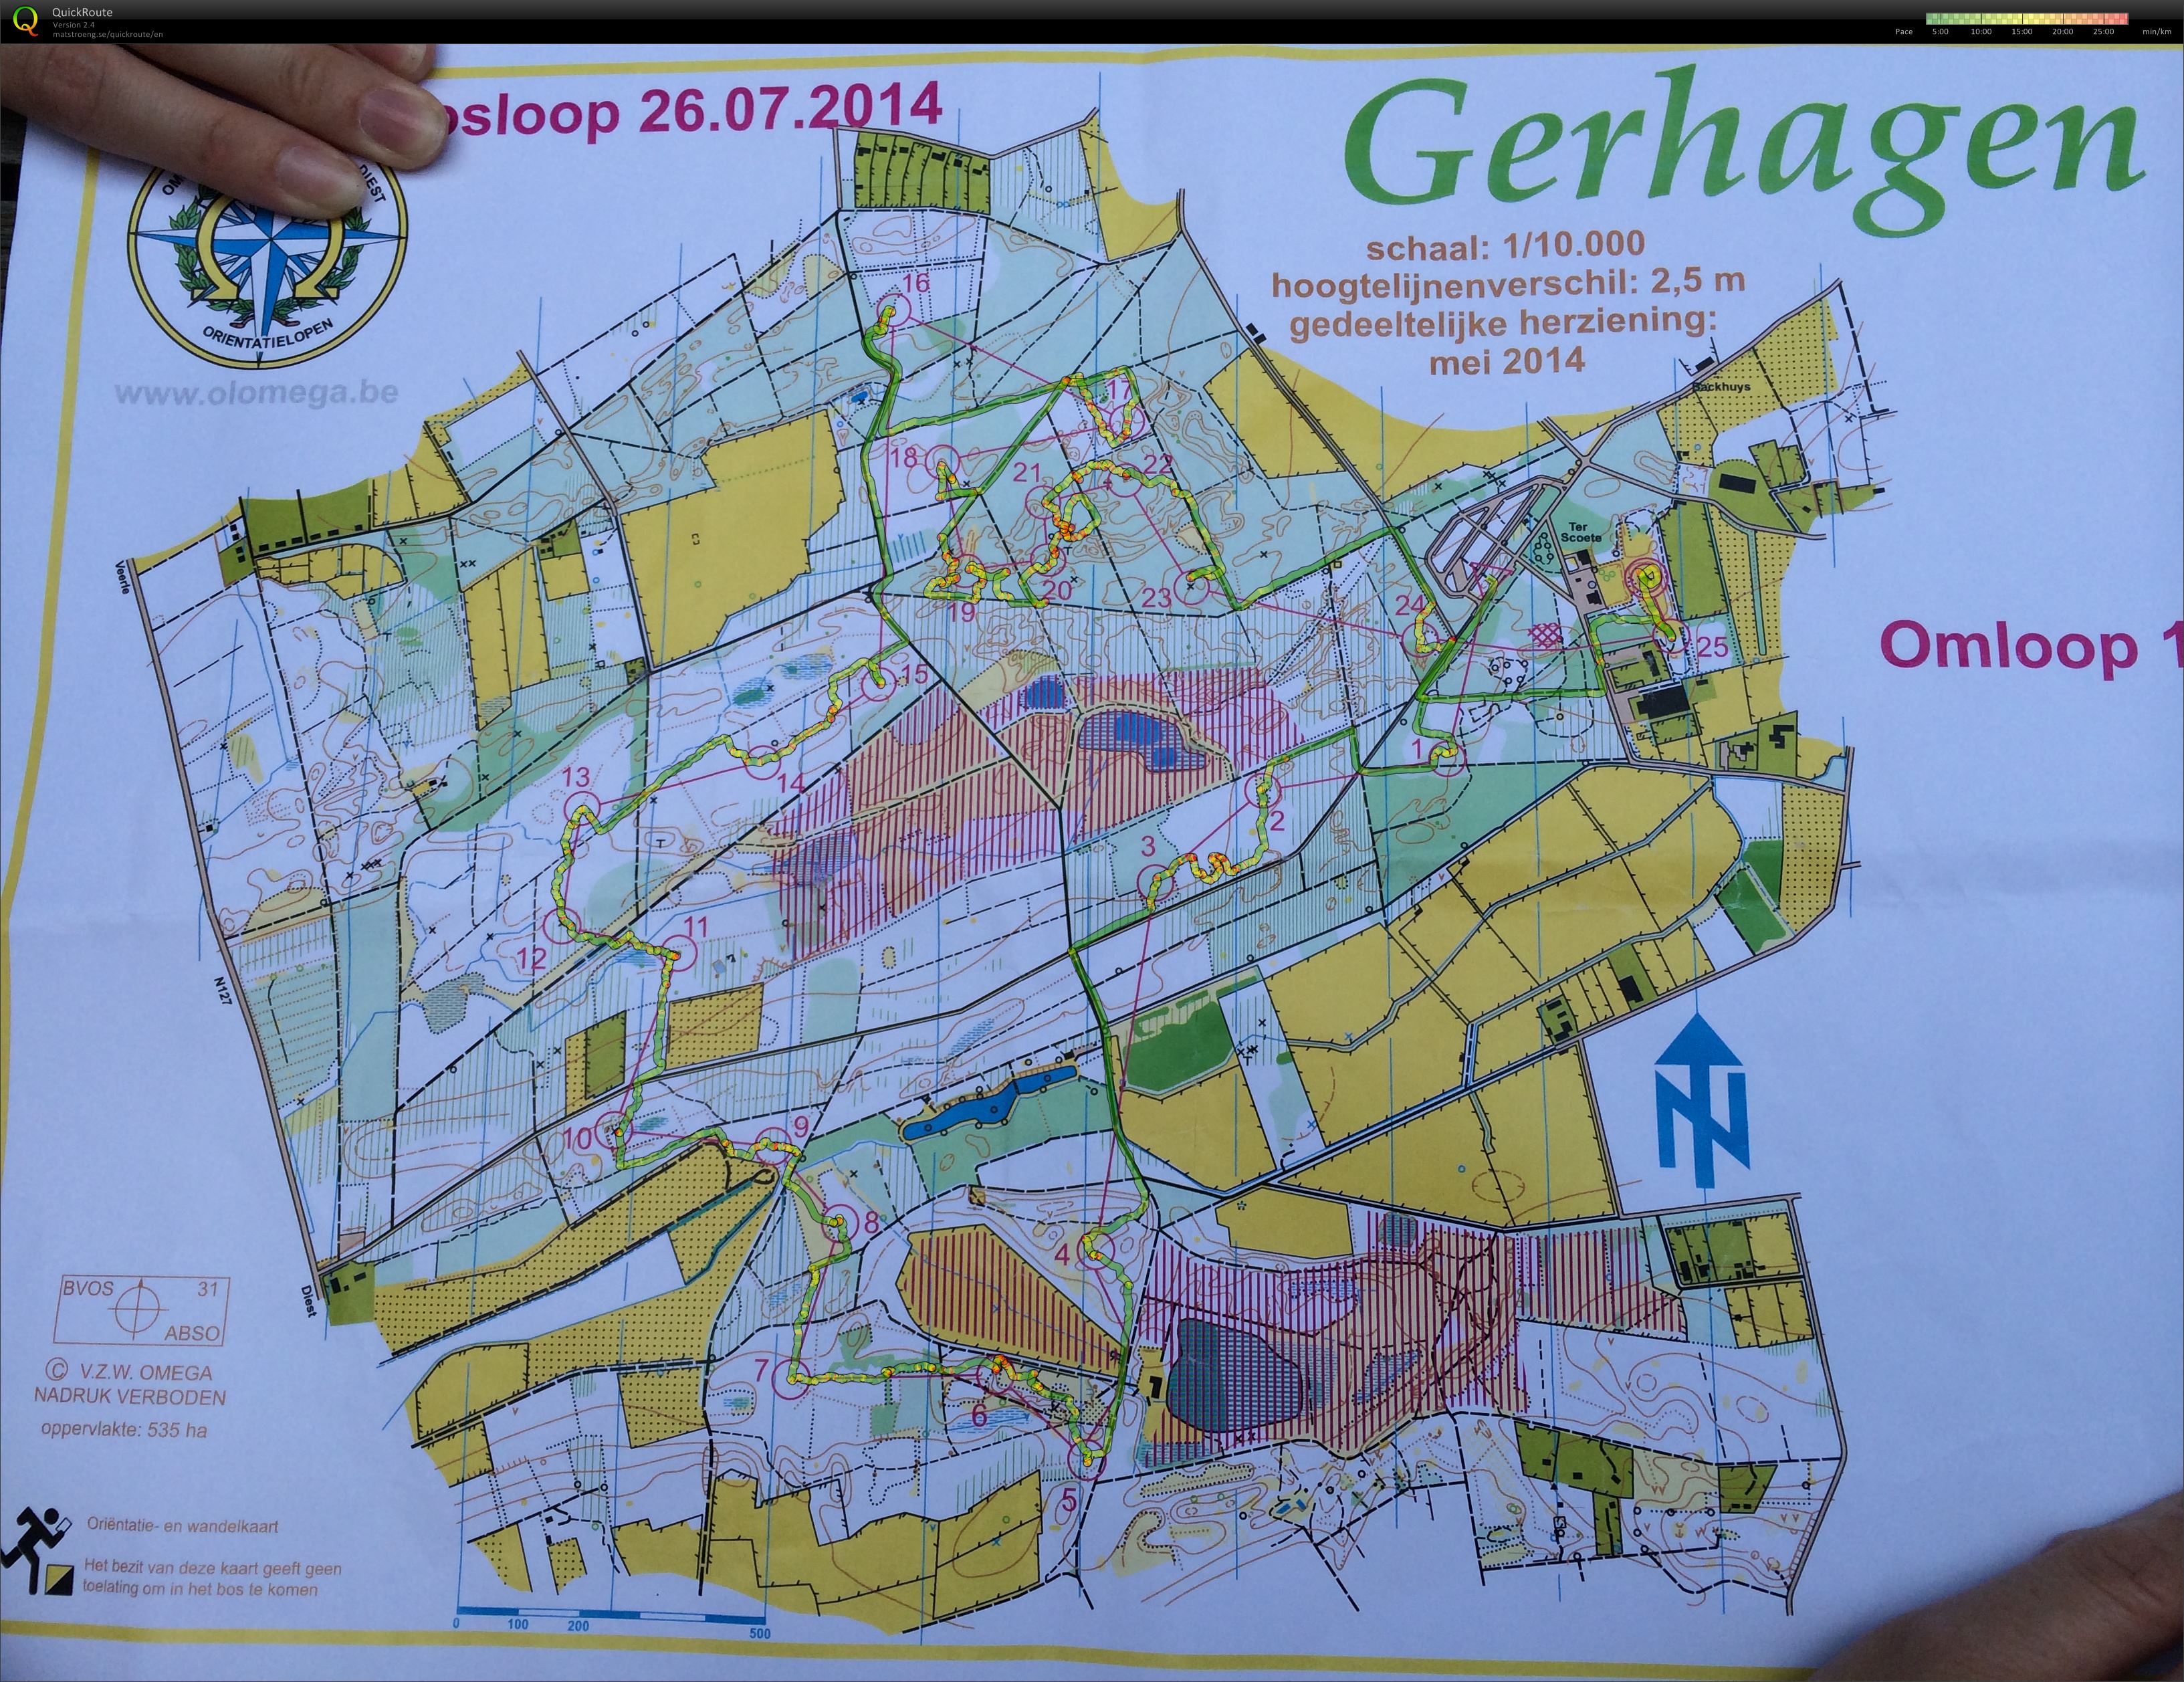 Regionale Gerhagen (2014-07-26)